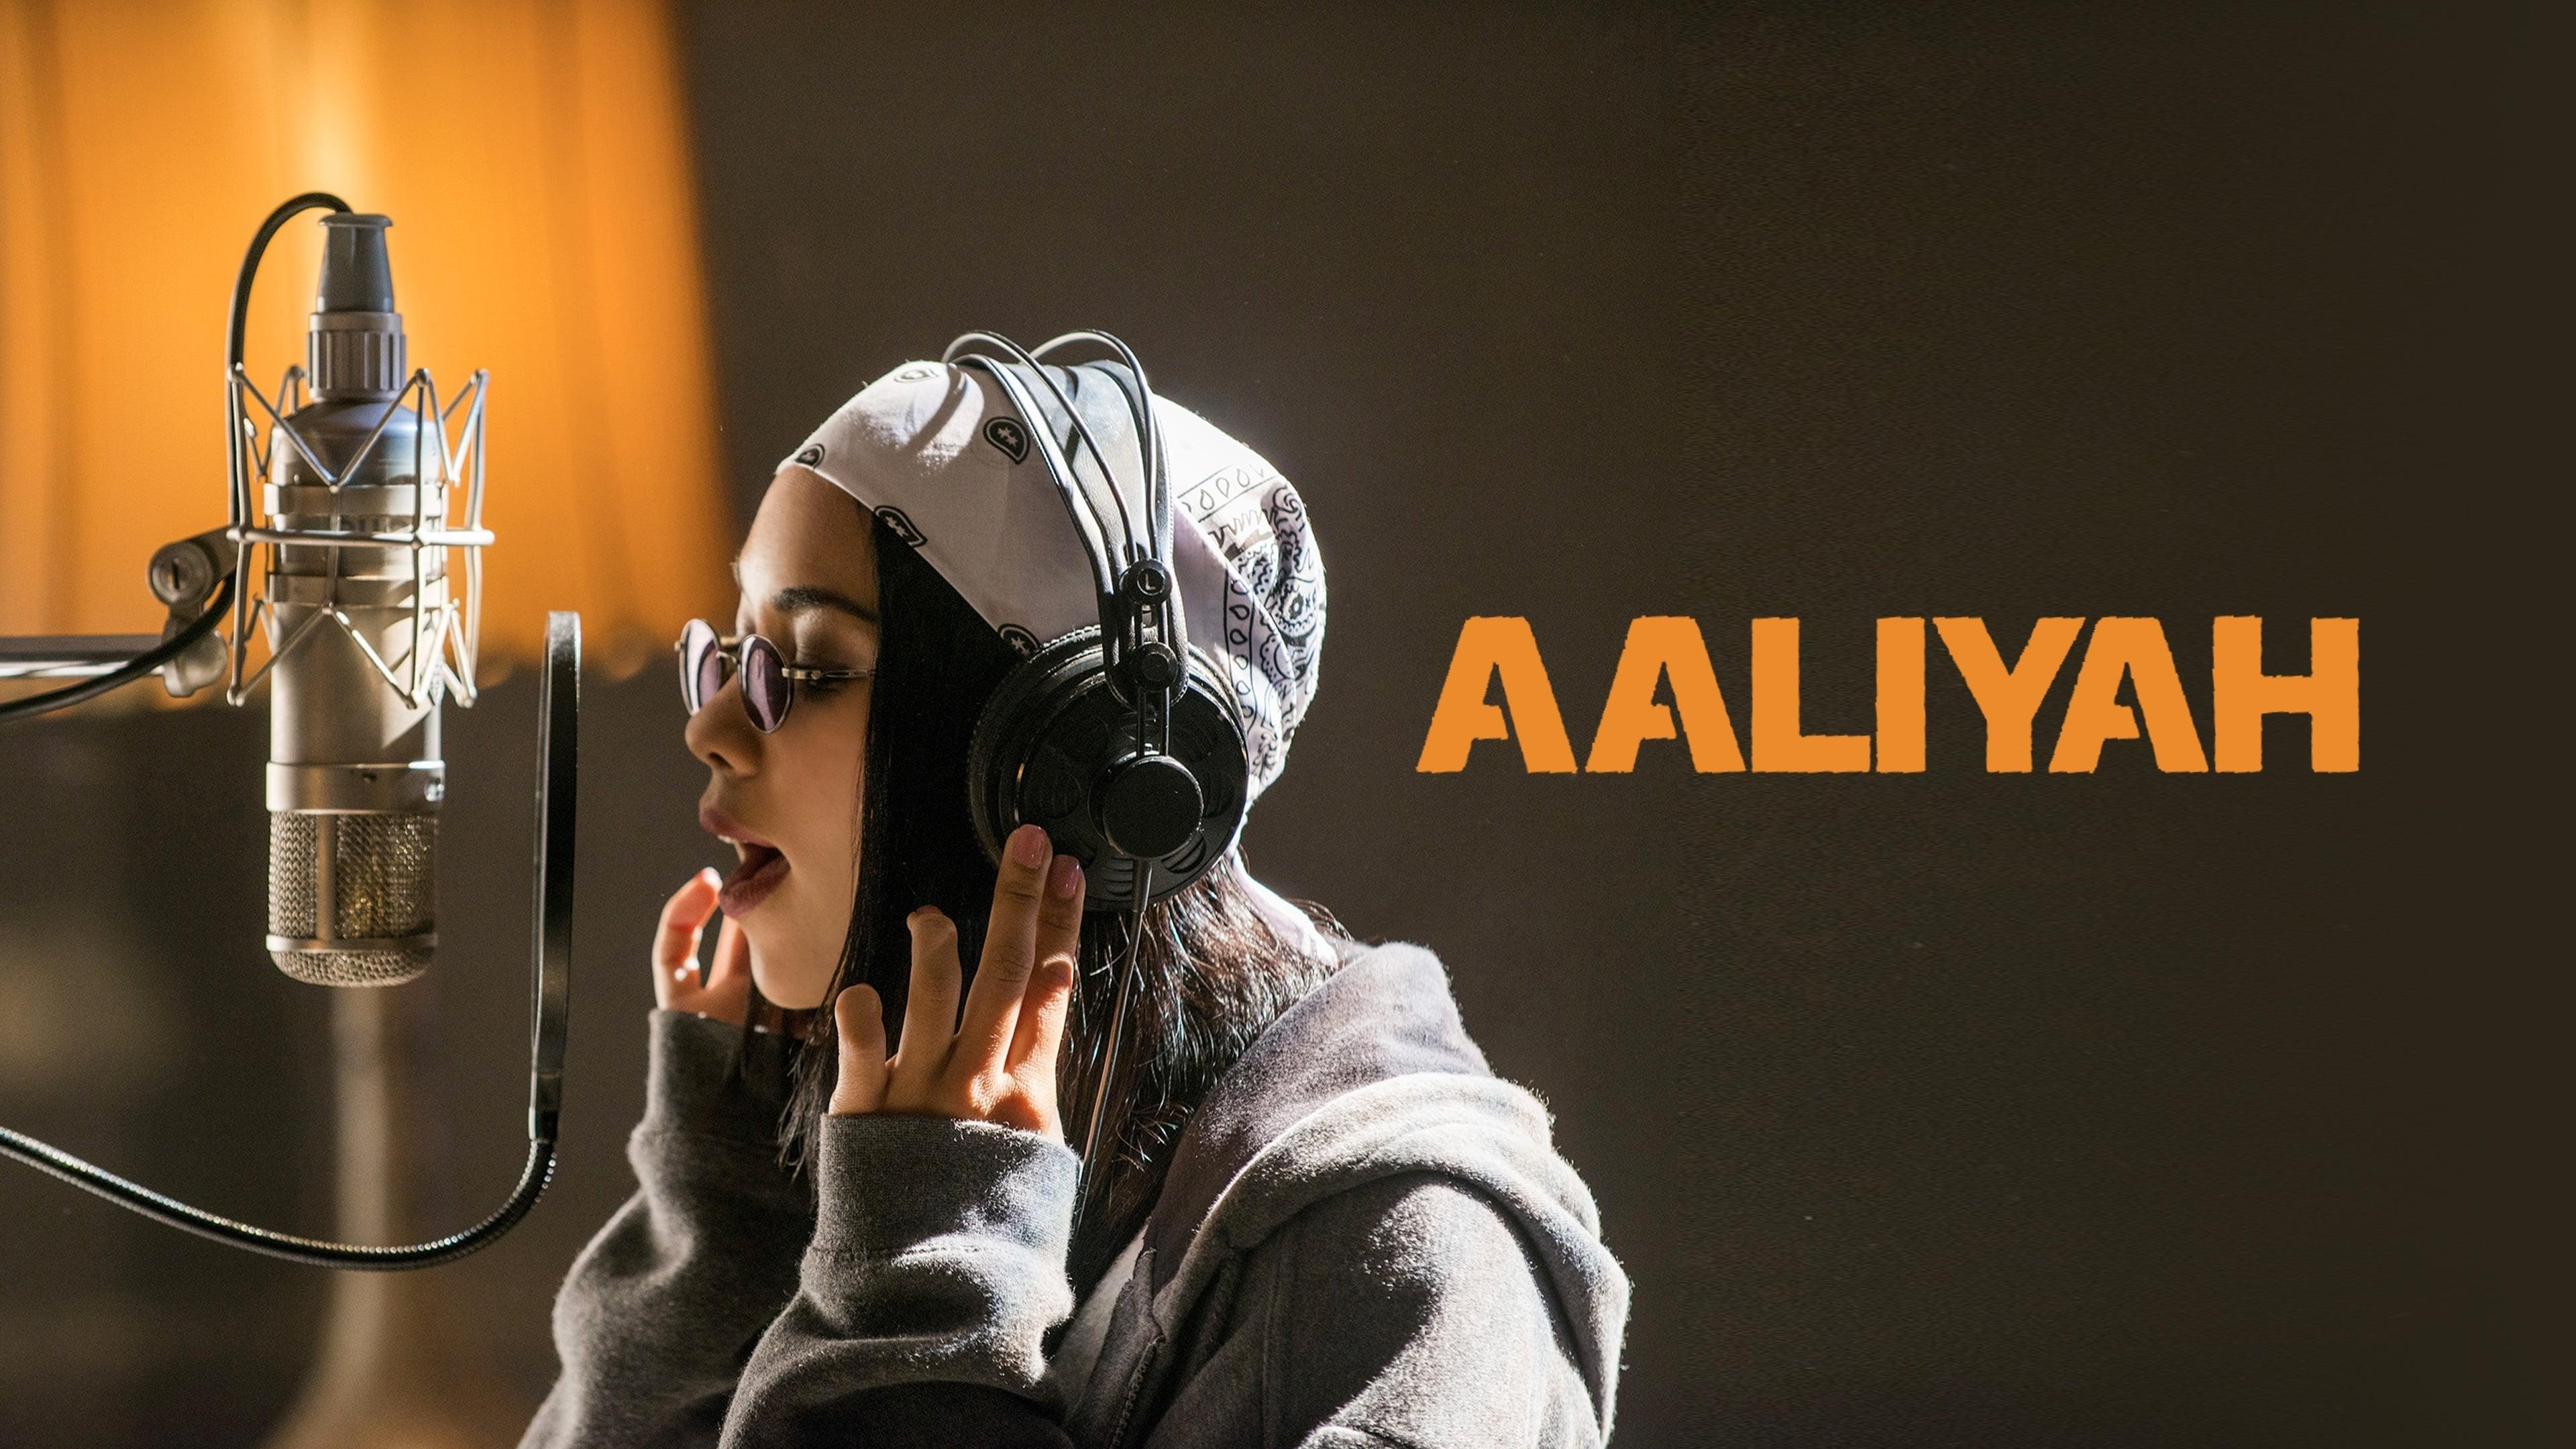 Aaliyah: The Princess of R&B backdrop